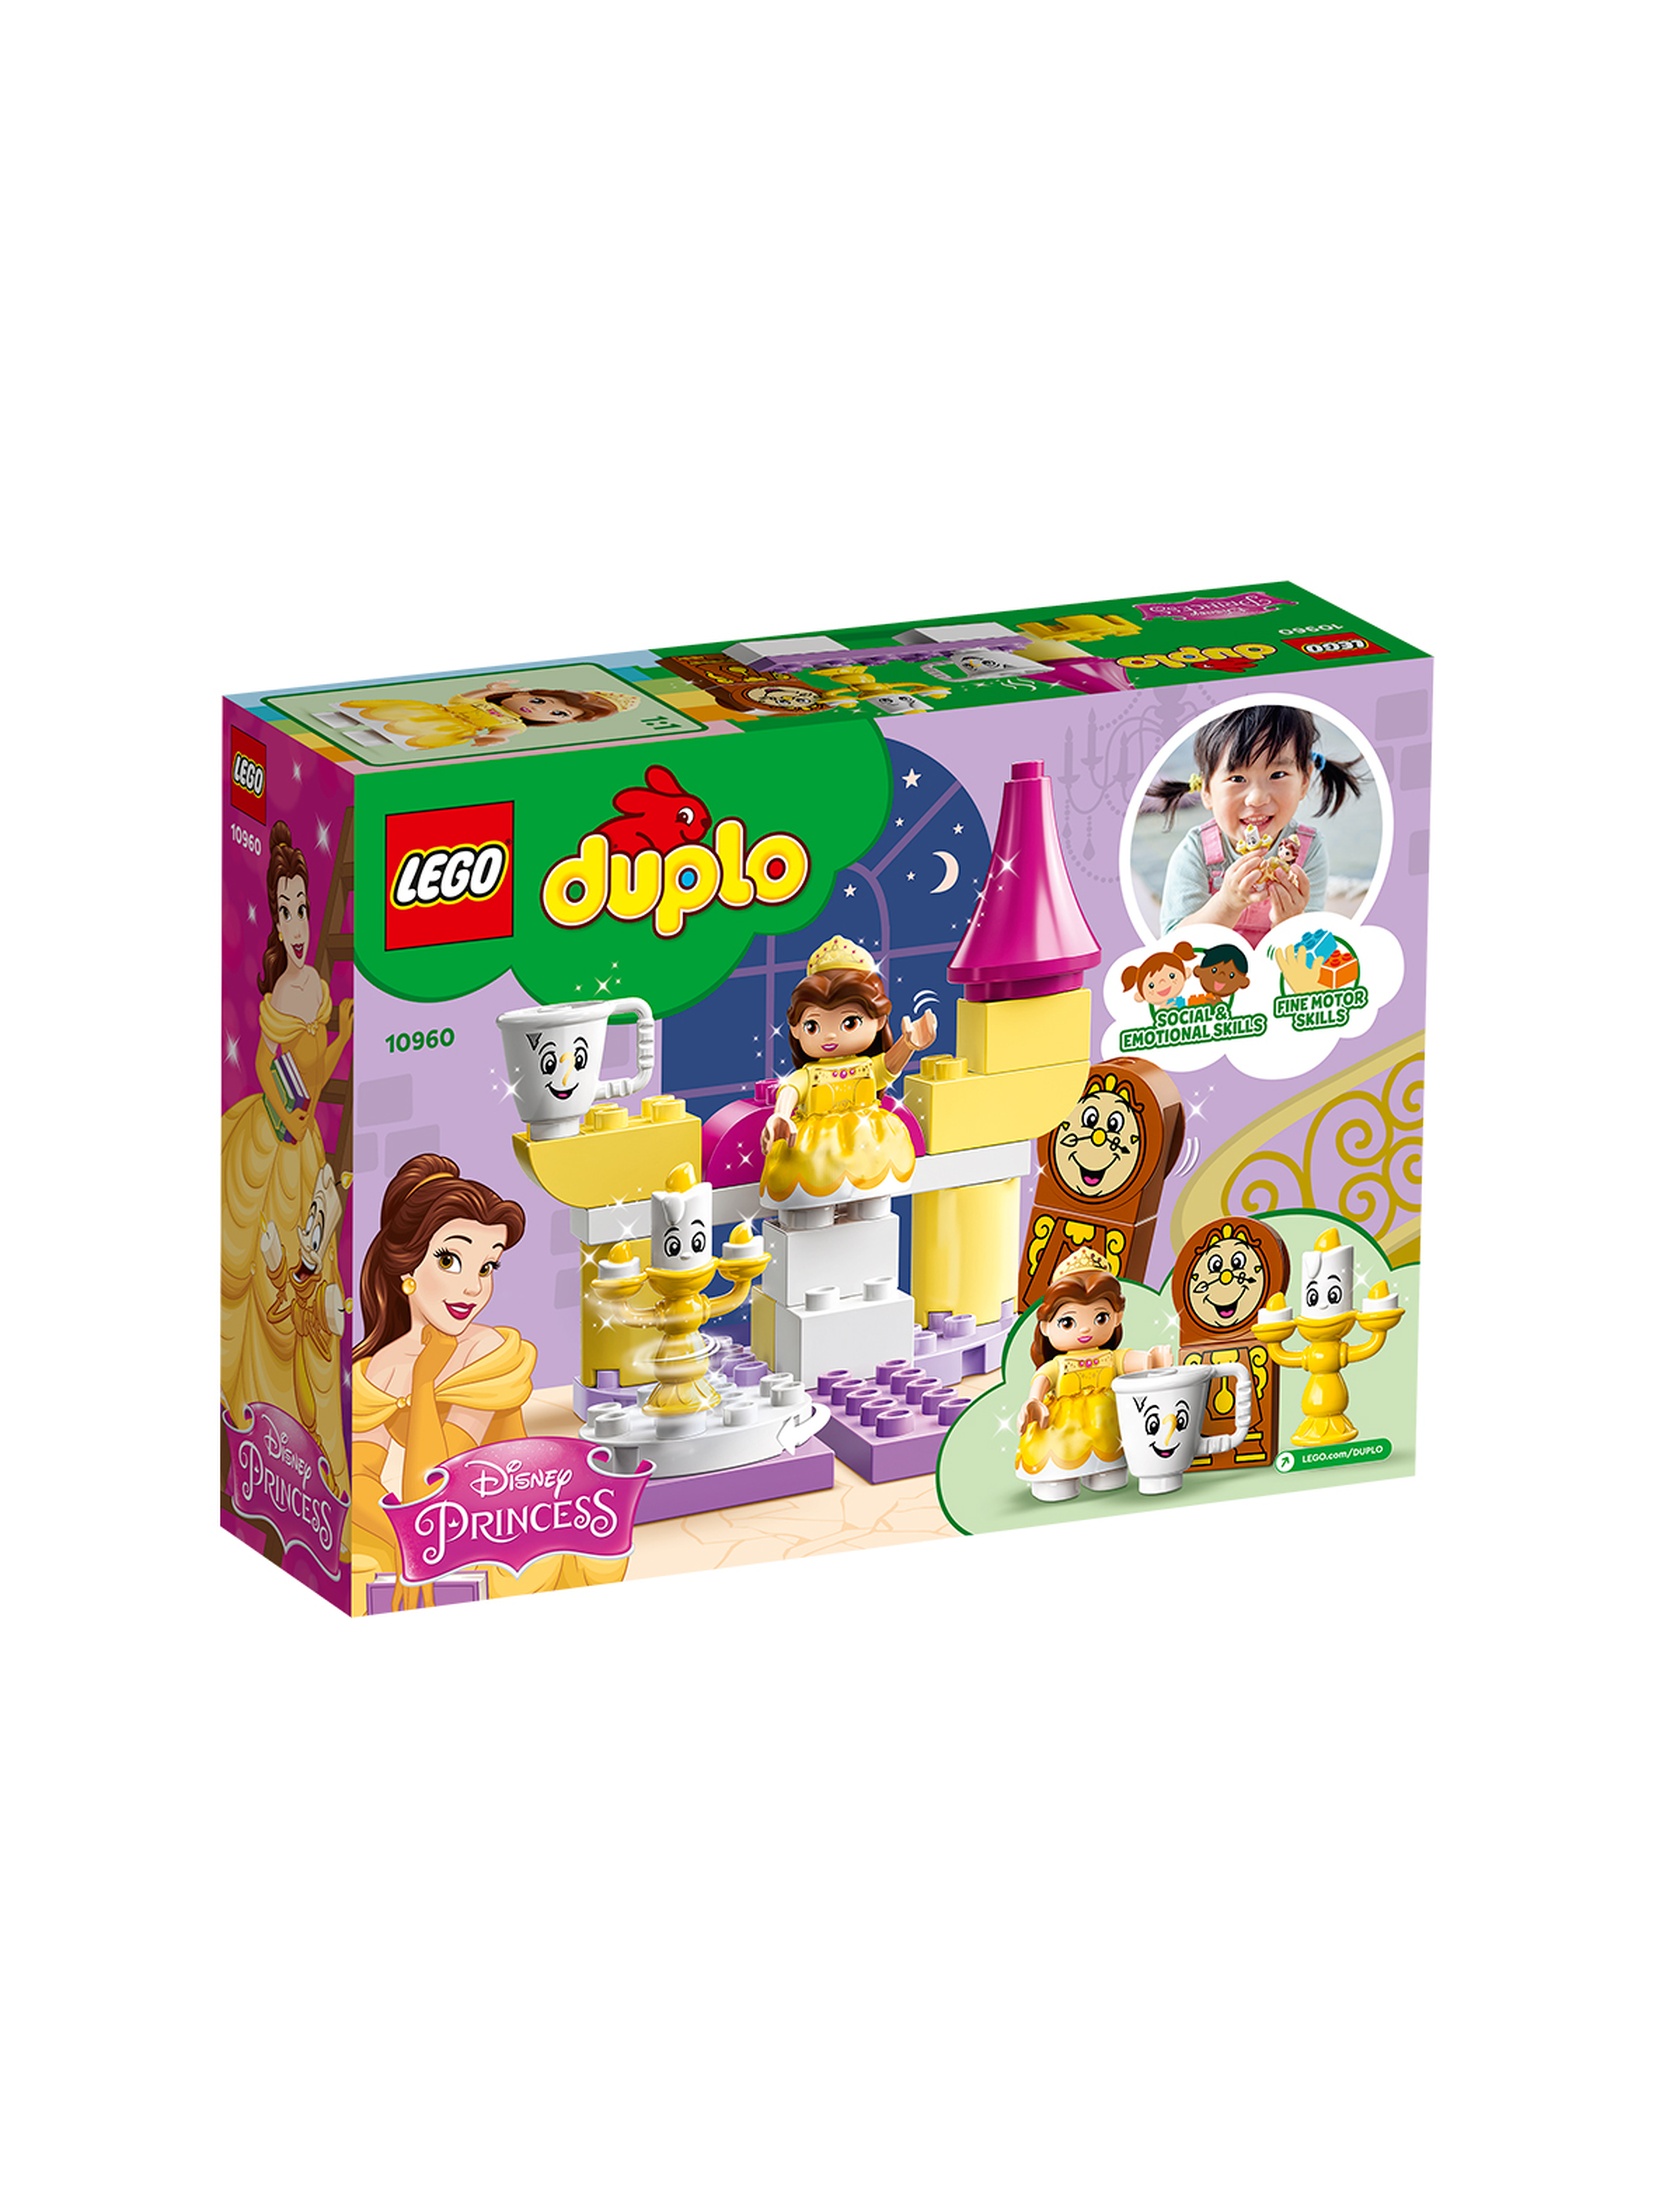 LEGO DUPLO - Disney Sala balowa Belli 10960 - 23 elementy, wiek 2+